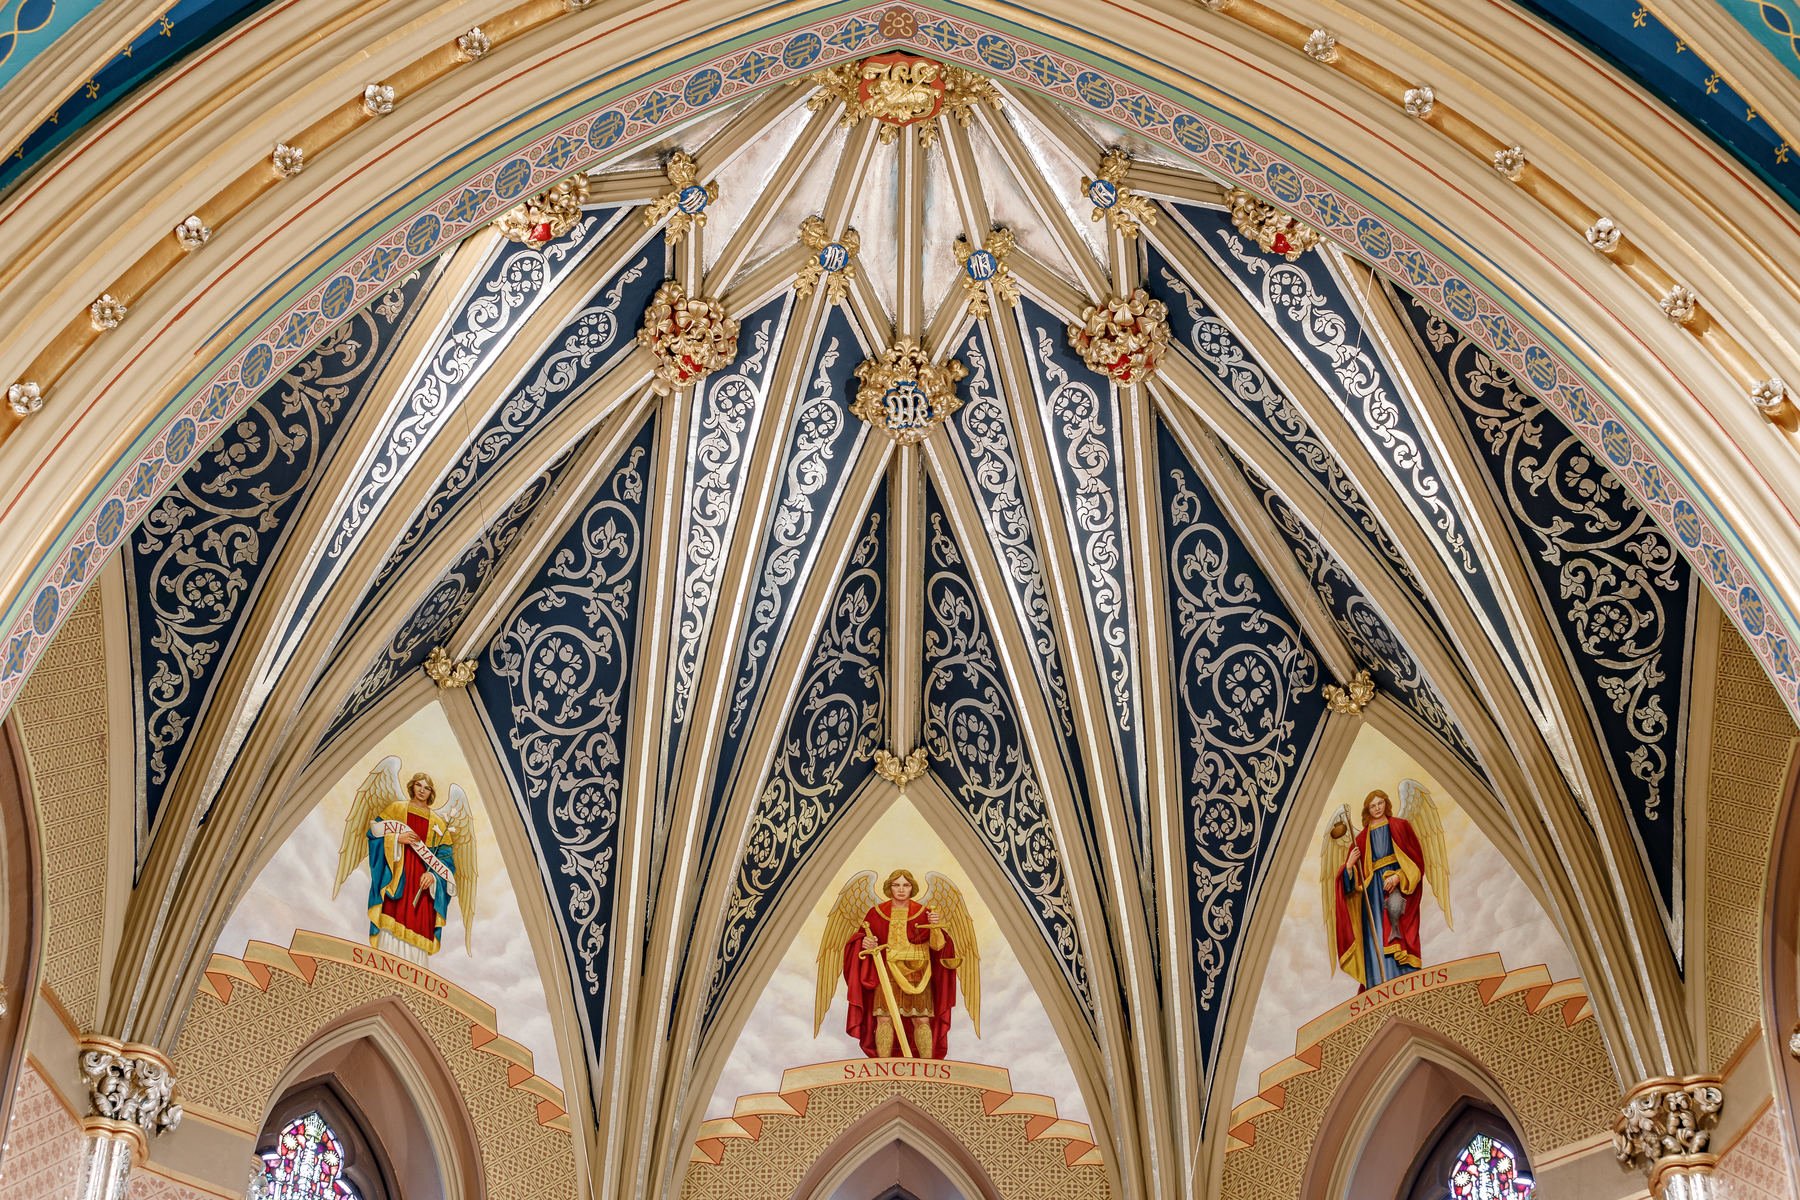   CRAFTSMANSHIP/ARTISANSHIP:  John Canning &amp; Co. for “Saint Mary’s Catholic Church-Decorative Finishes and Artwork”   Photographer Credit: Aaron Joseph  